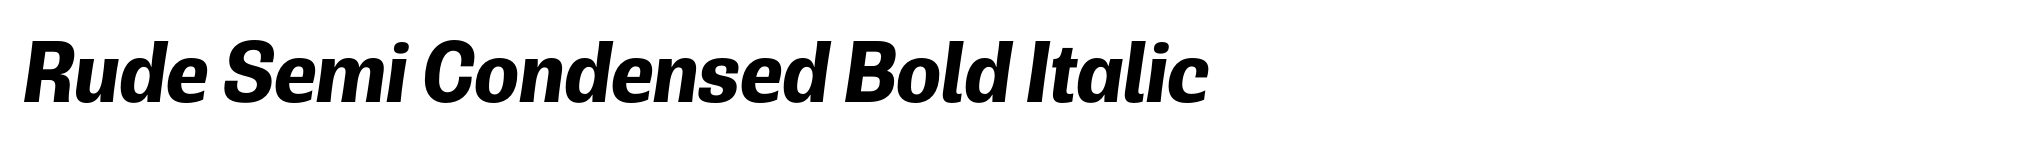 Rude Semi Condensed Bold Italic image